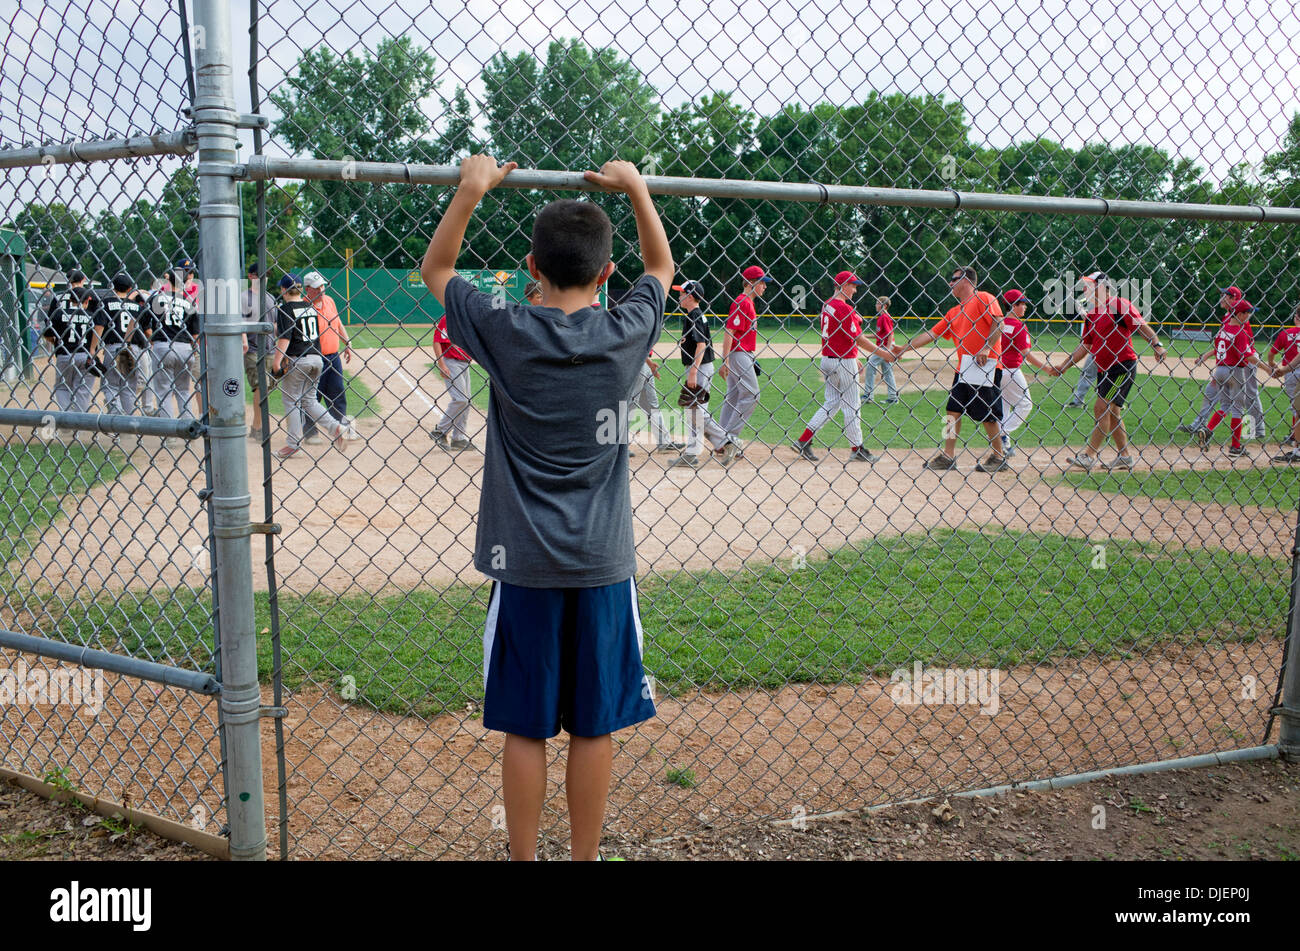 Adolescente boy viendo béisbol práctica buena deportividad agitando las manos después del juego. St Paul MN Minnesota EE.UU. Foto de stock